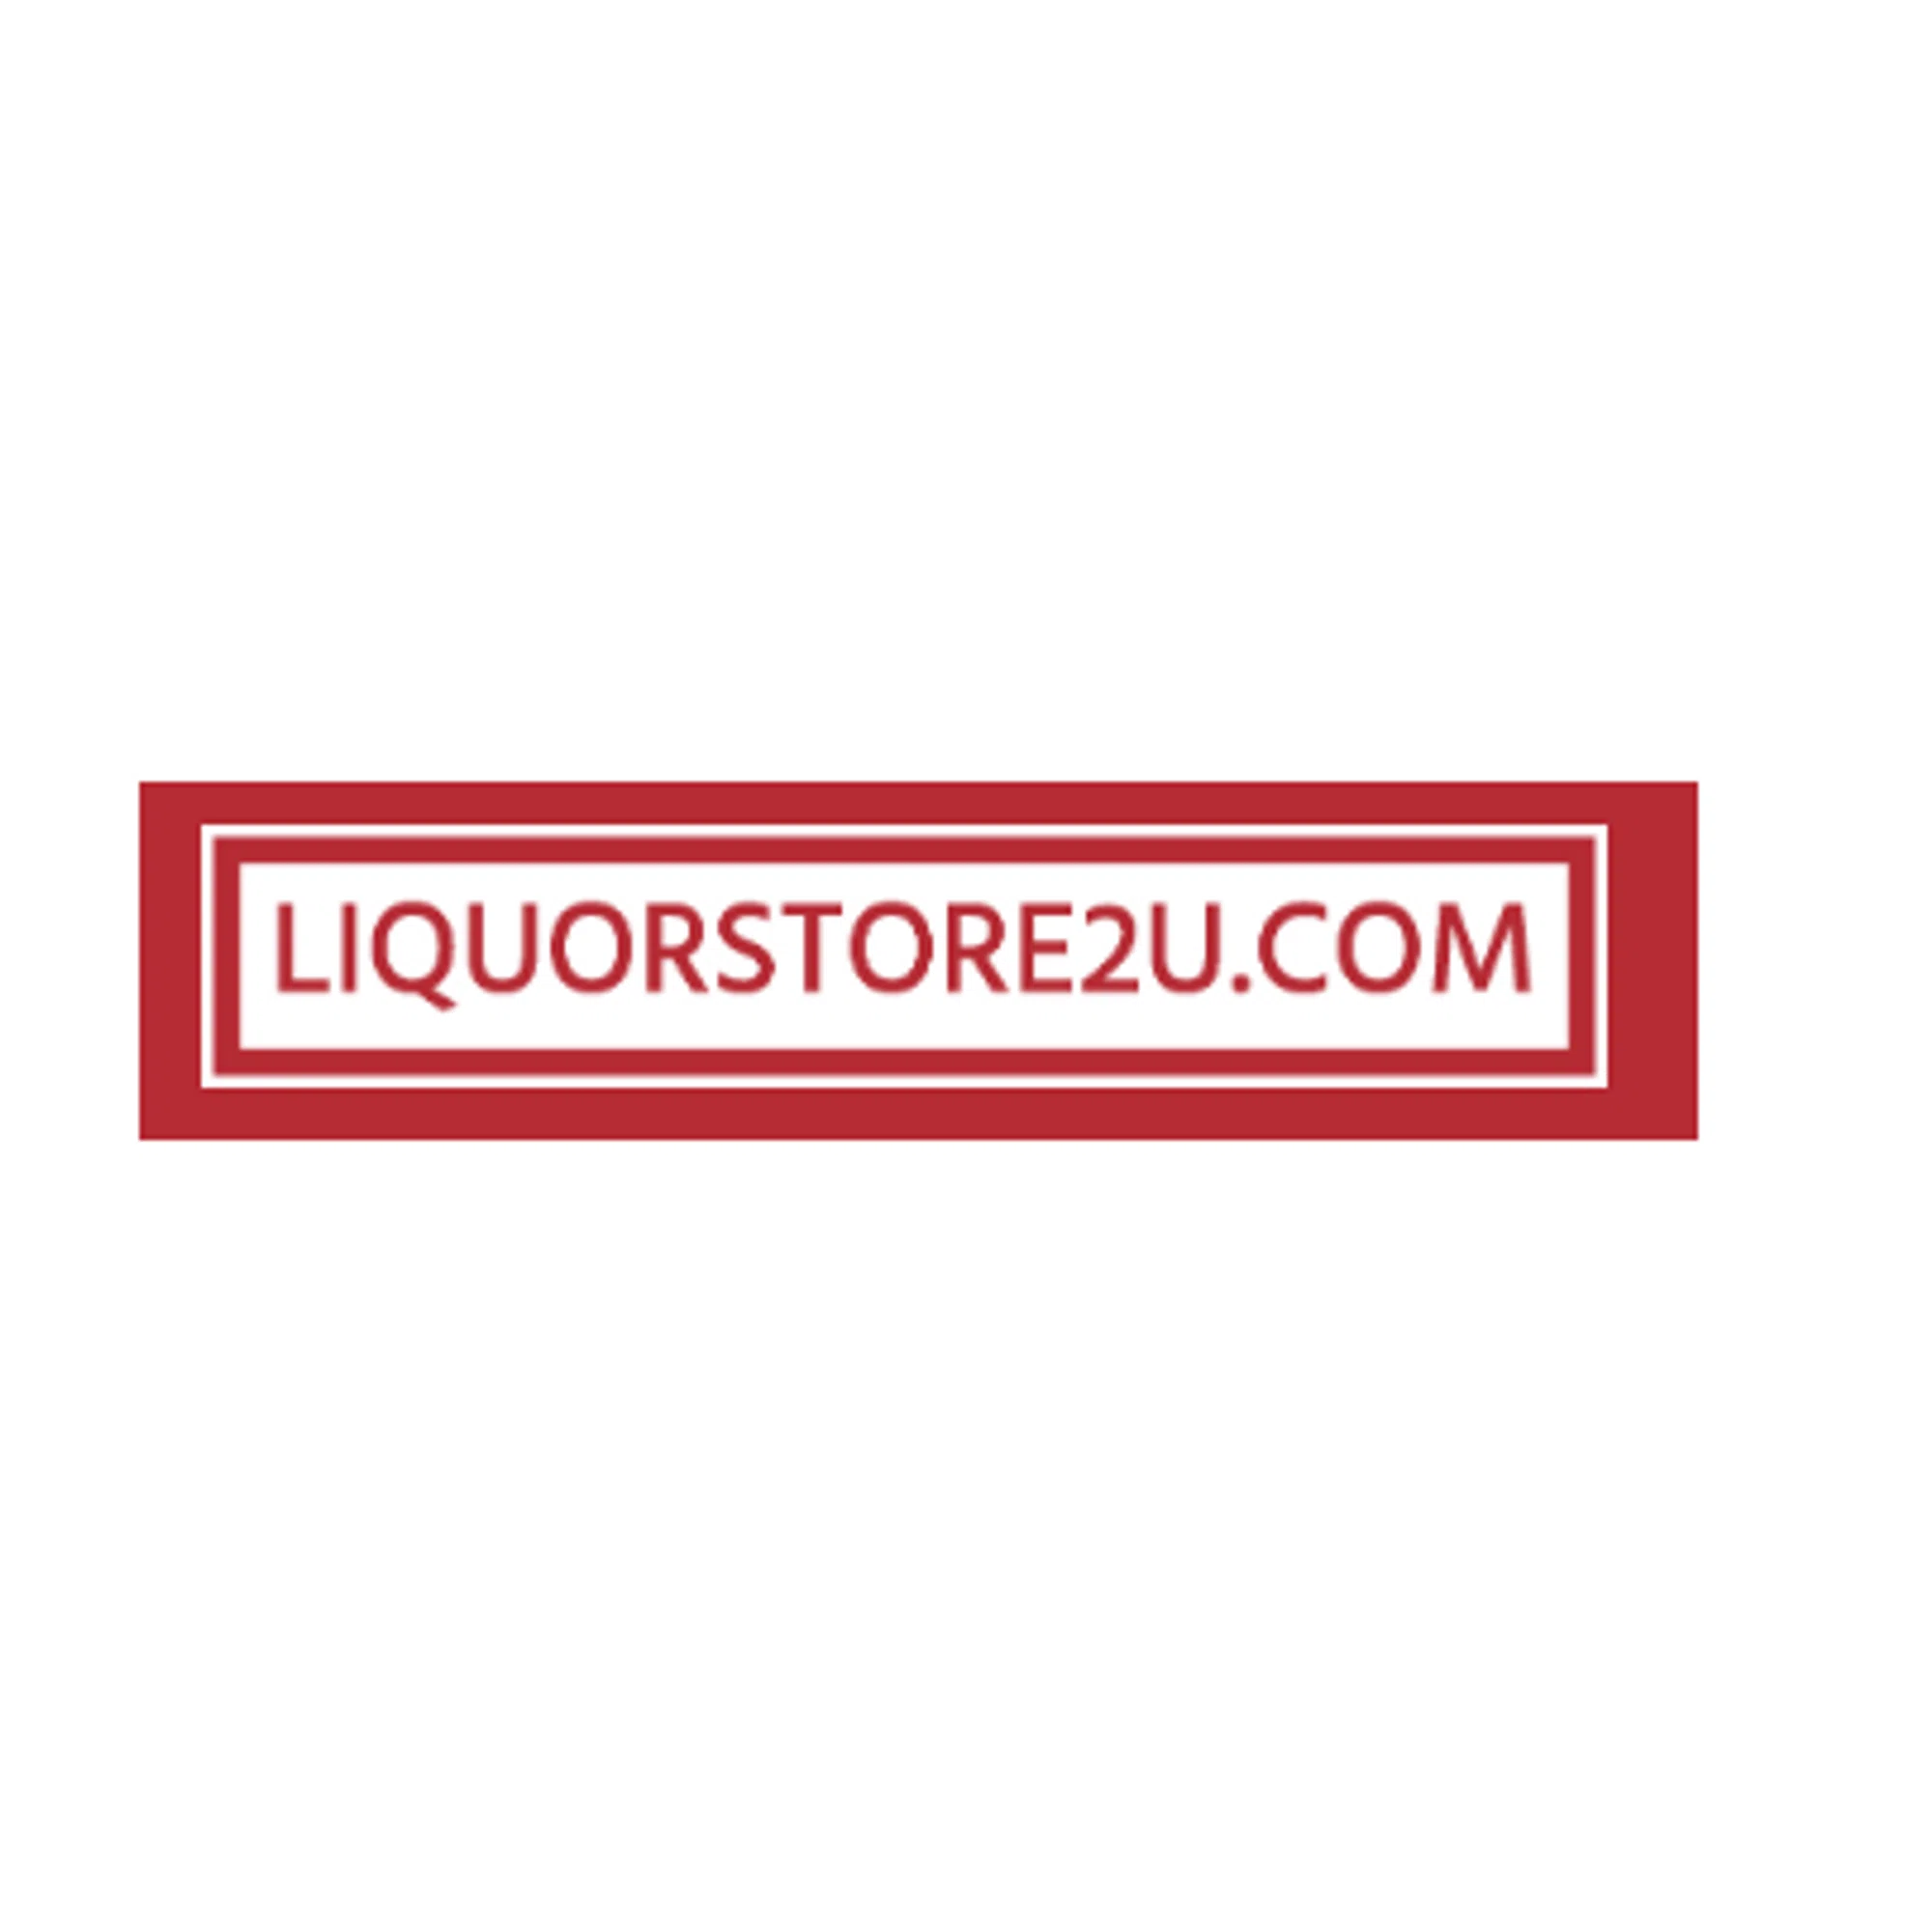 liquorstore2u.com logo